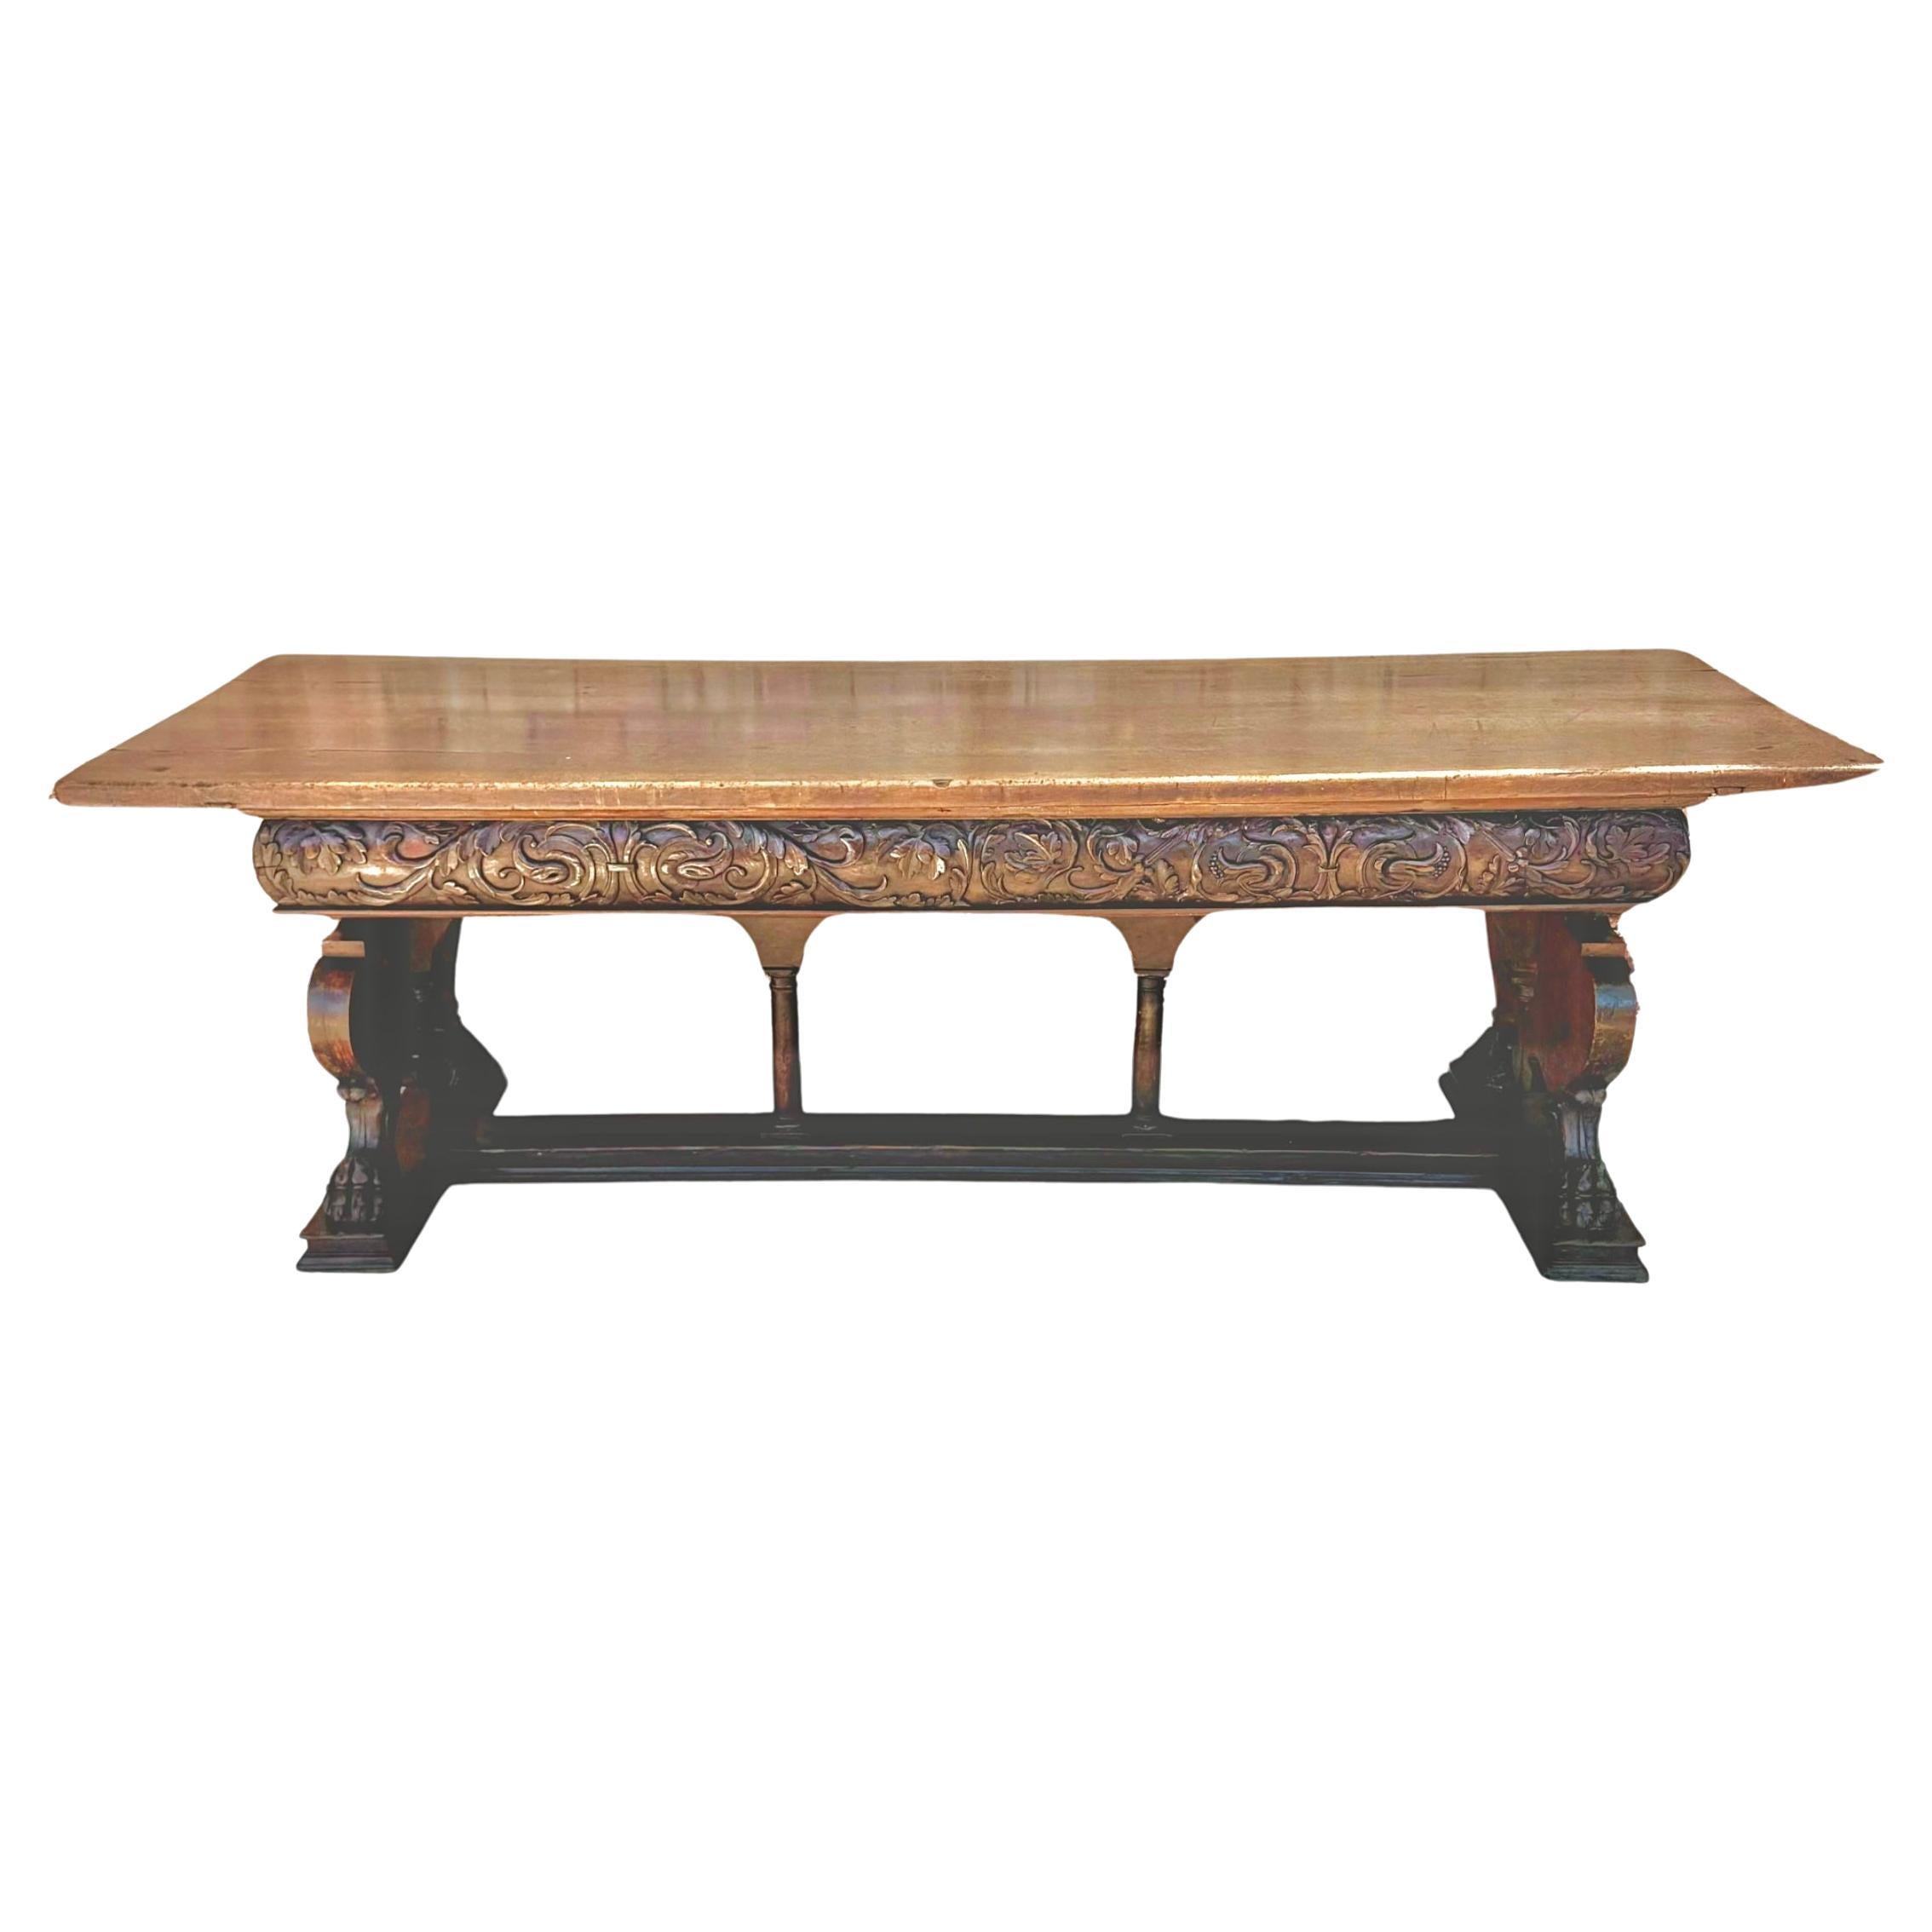 Wunderschöner Nussbaum-Mitteltisch aus der italienischen Renaissance des 17. Jahrhunderts. Der Tisch hat eine rechteckige Platte über einem kunstvoll gearbeiteten Fries auf breiten geschnitzten Endstücken, die in großen Tatzenfüßen enden. Der Tisch